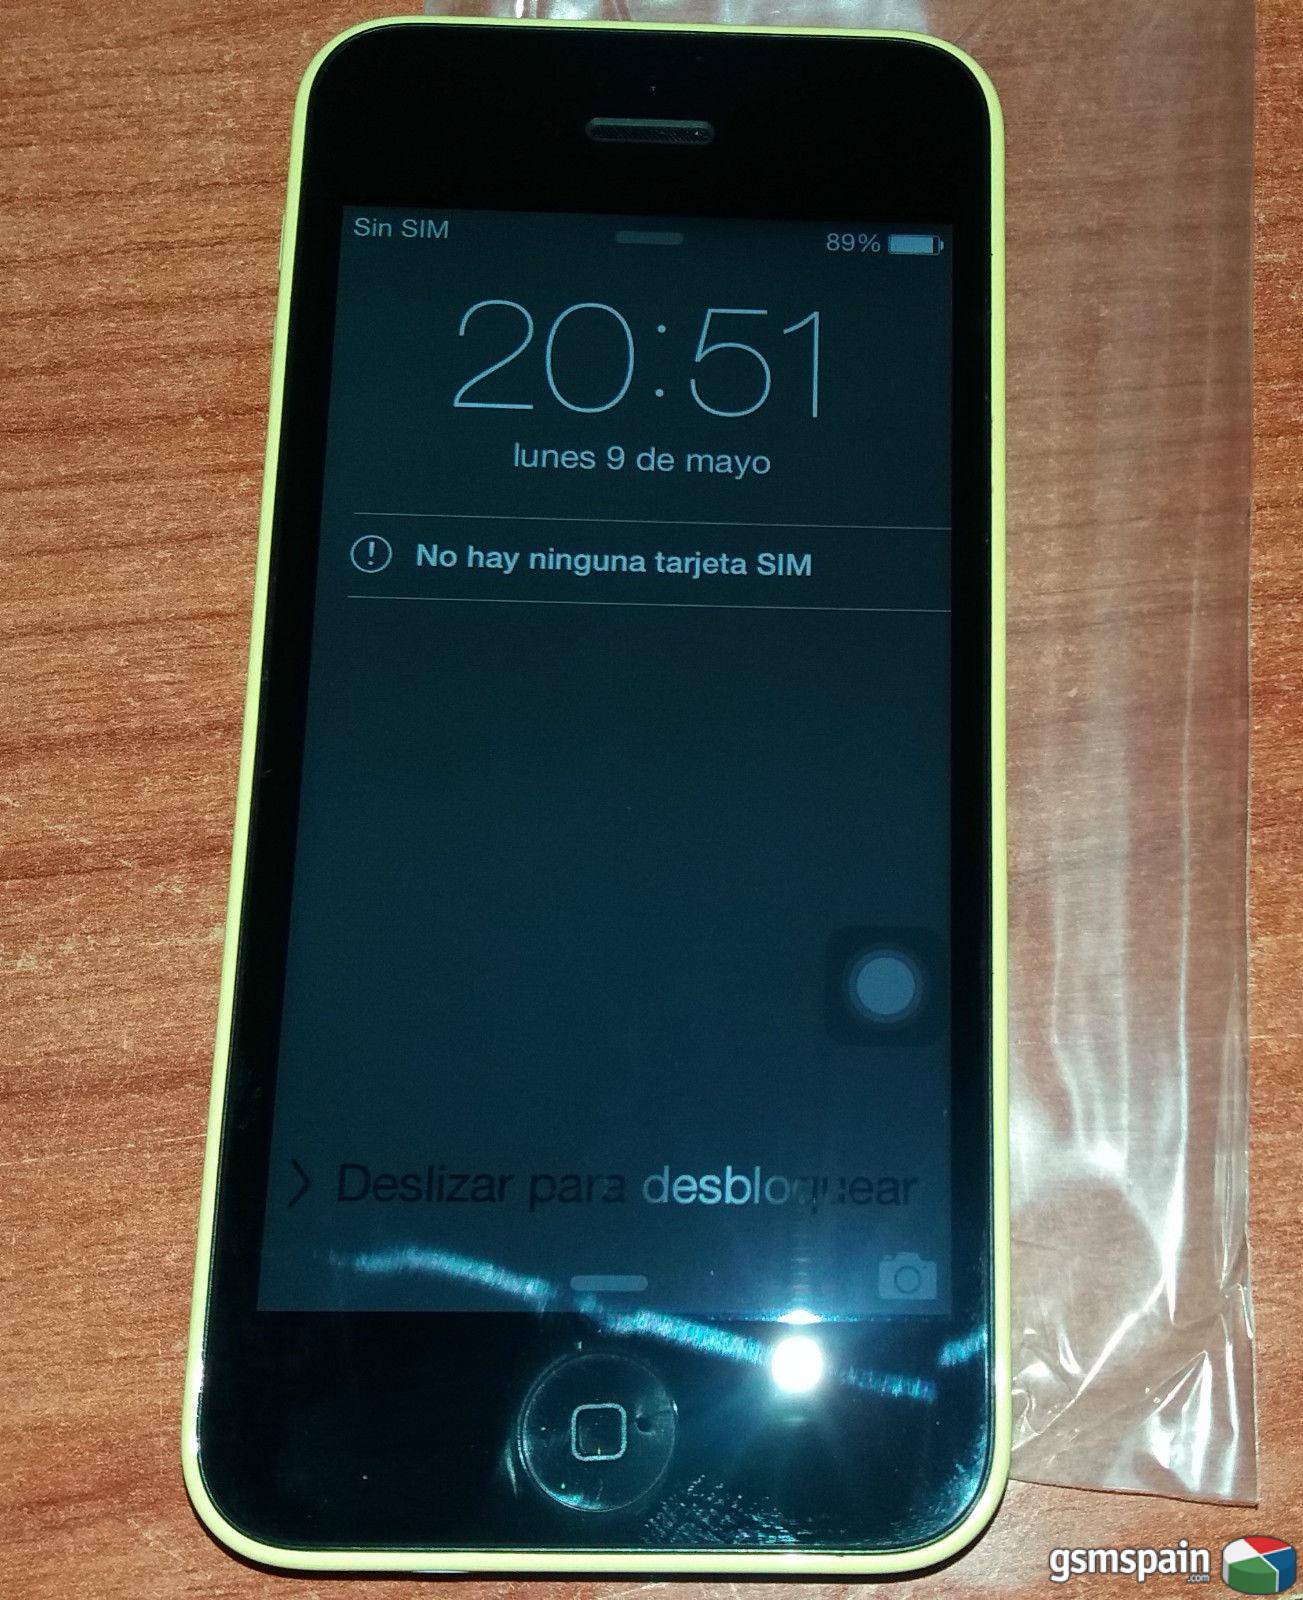 [VENDO] iPHONE 5C 8GB LIBRE Amarillo como Nuevo